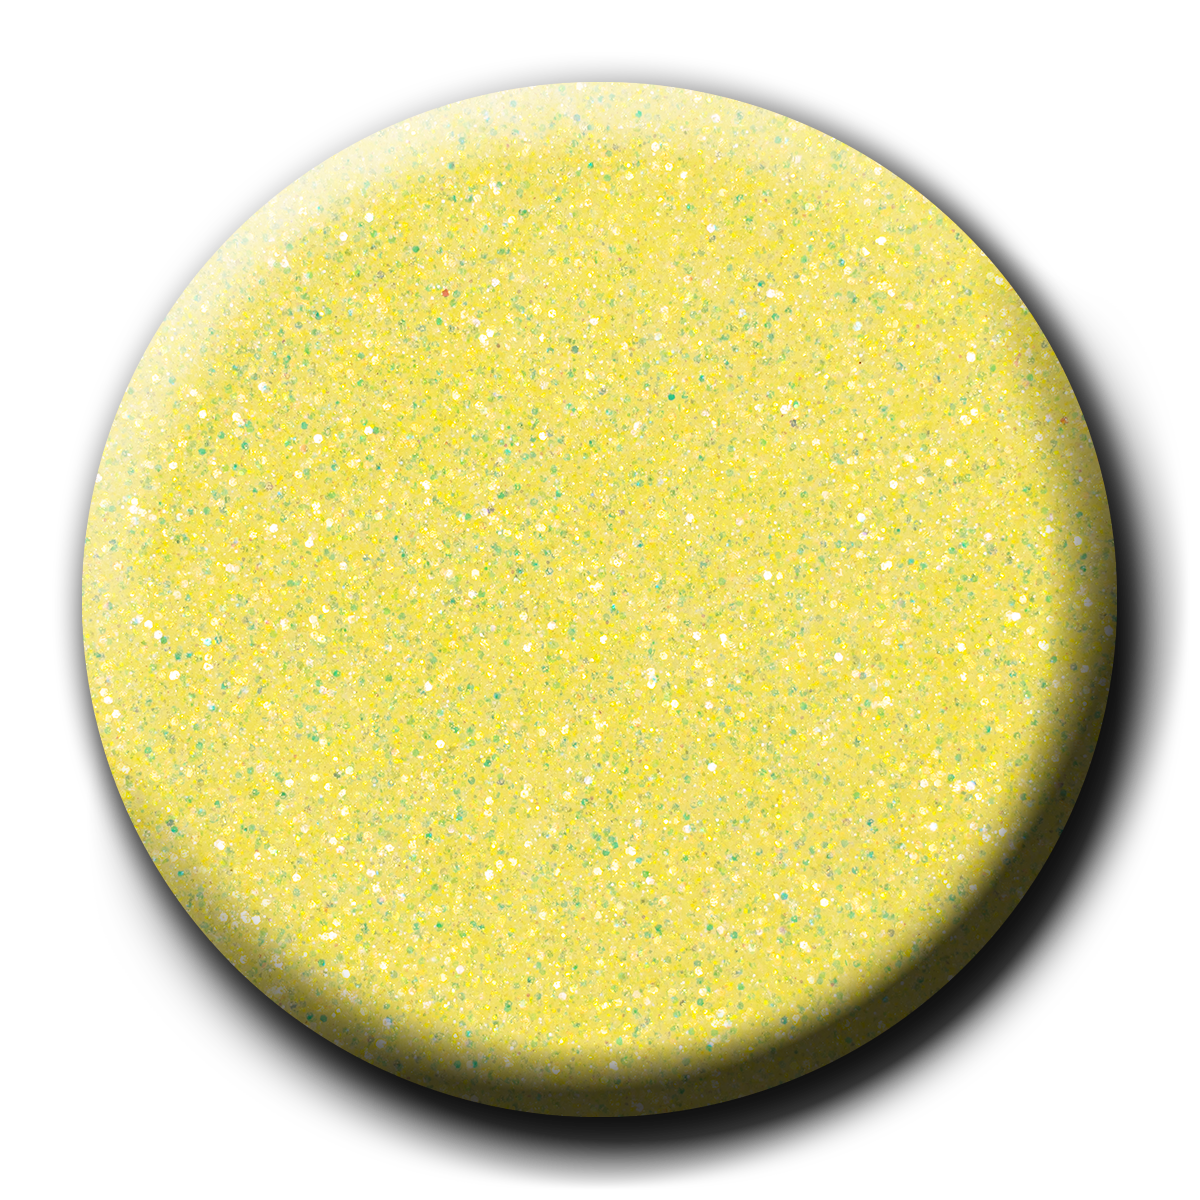 Sugar Drop UV/LED Glitter Gel, 17 ml